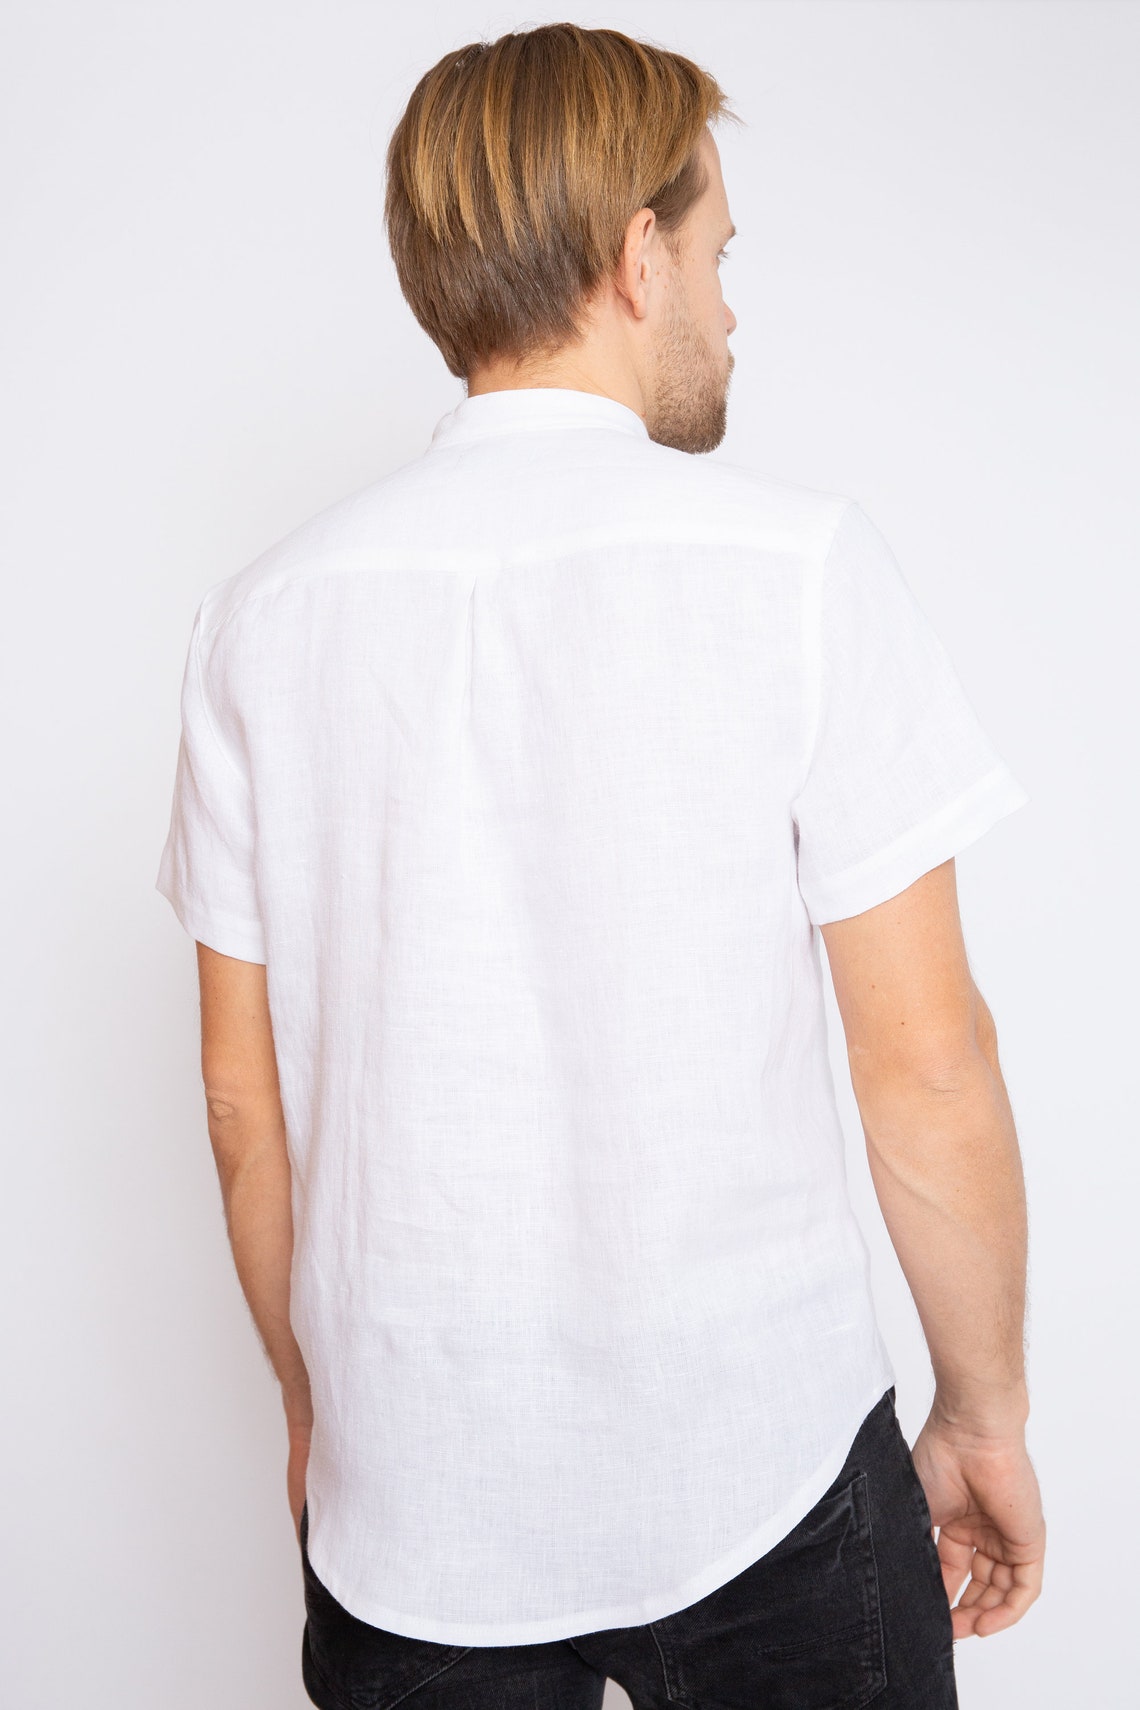 White Linen Shirt Short Sleeve Men Shirt Regular Fit Shirt - Etsy Australia